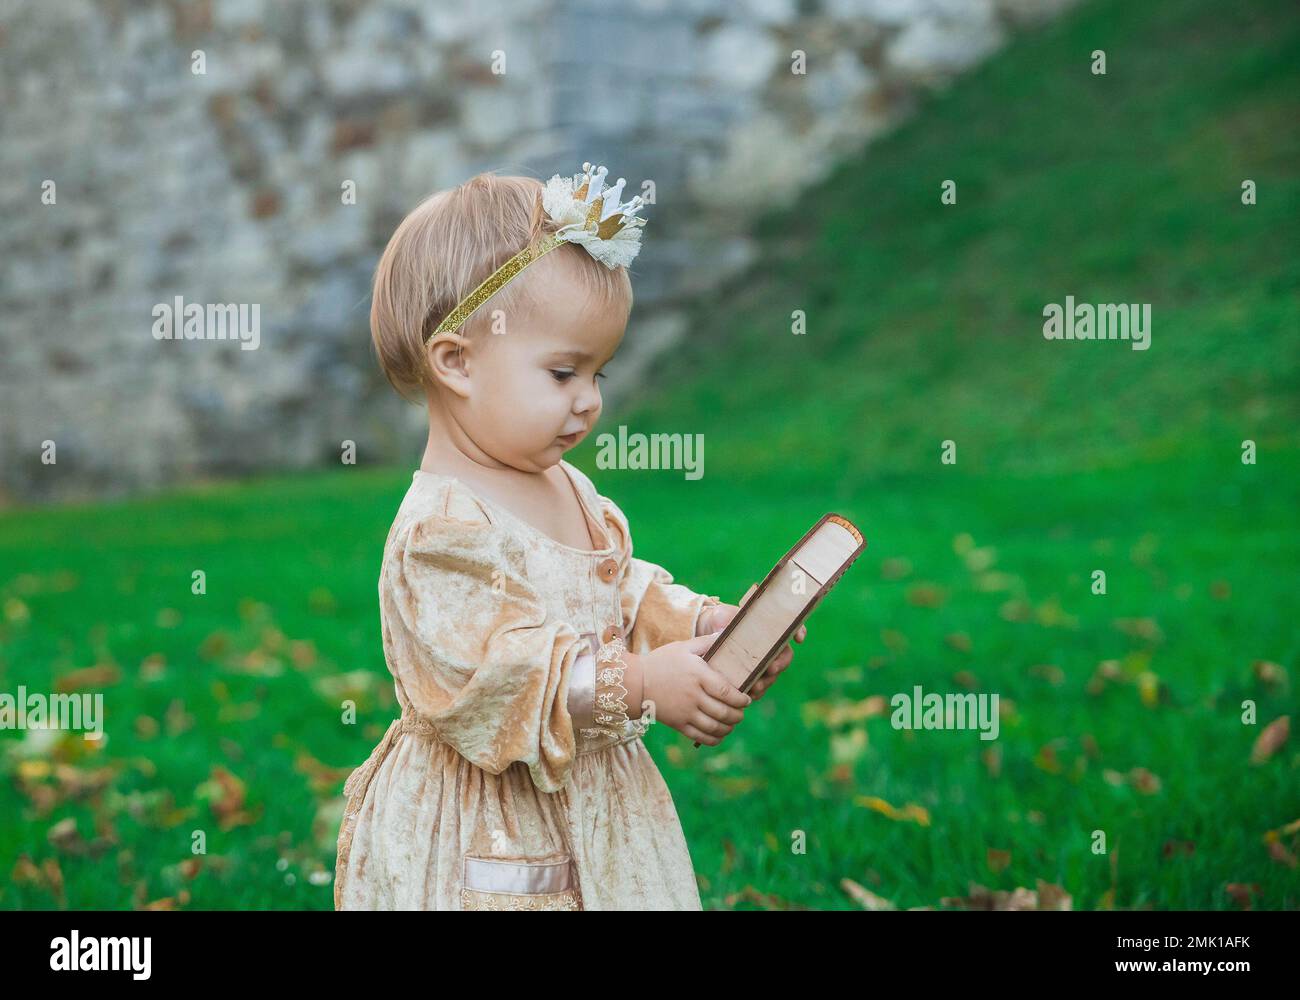 bébé charmant en costume de princesse avec couronne sur la tête Banque D'Images